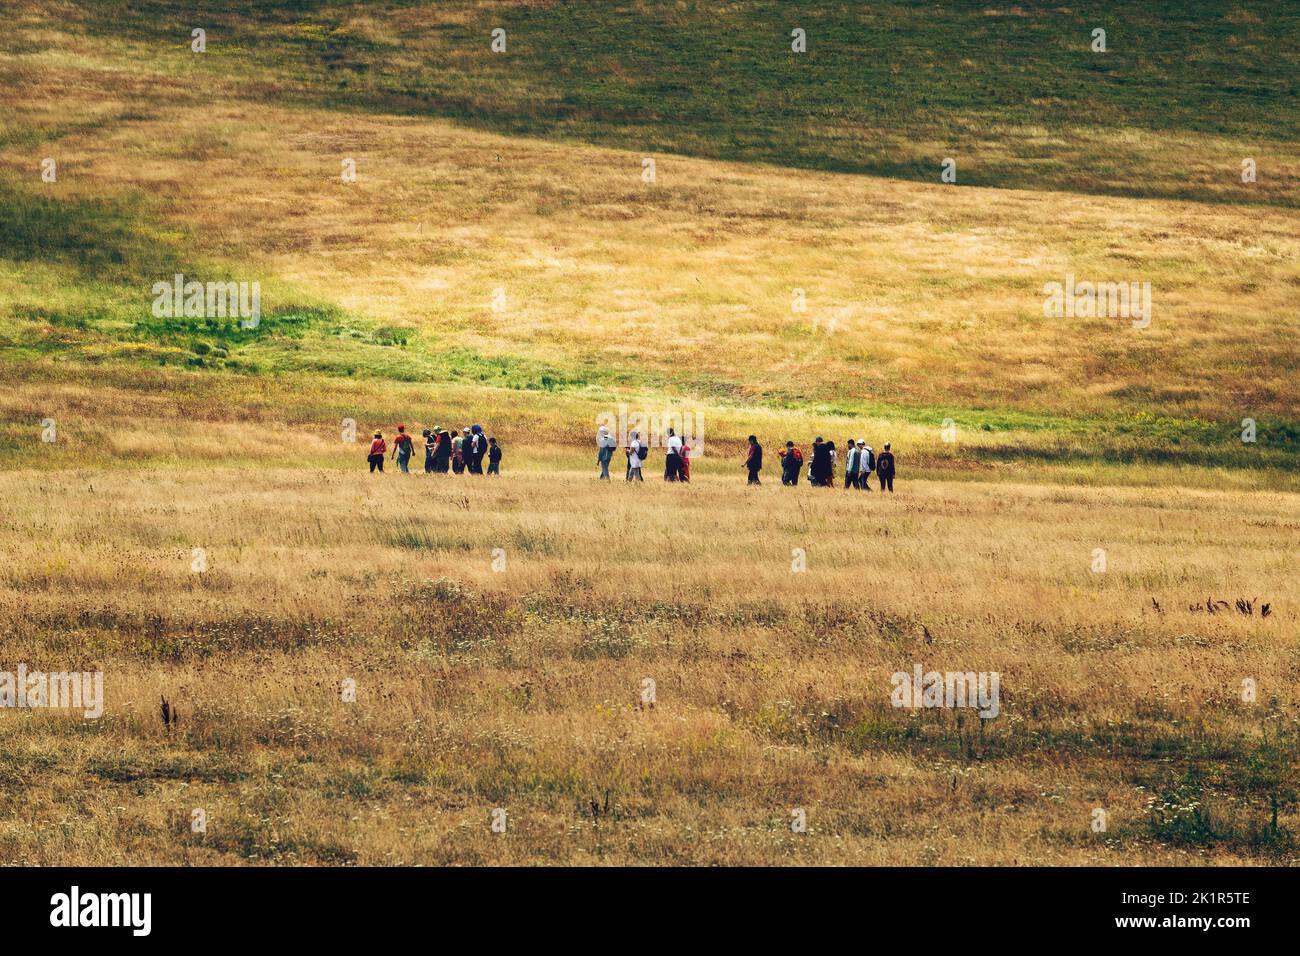 Groupe de personnes randonnée à travers les collines de Zlatibor paysage le jour d'été couvert. La marche dans la nature est une activité de plein air populaire dans ce touriste serbe Banque D'Images